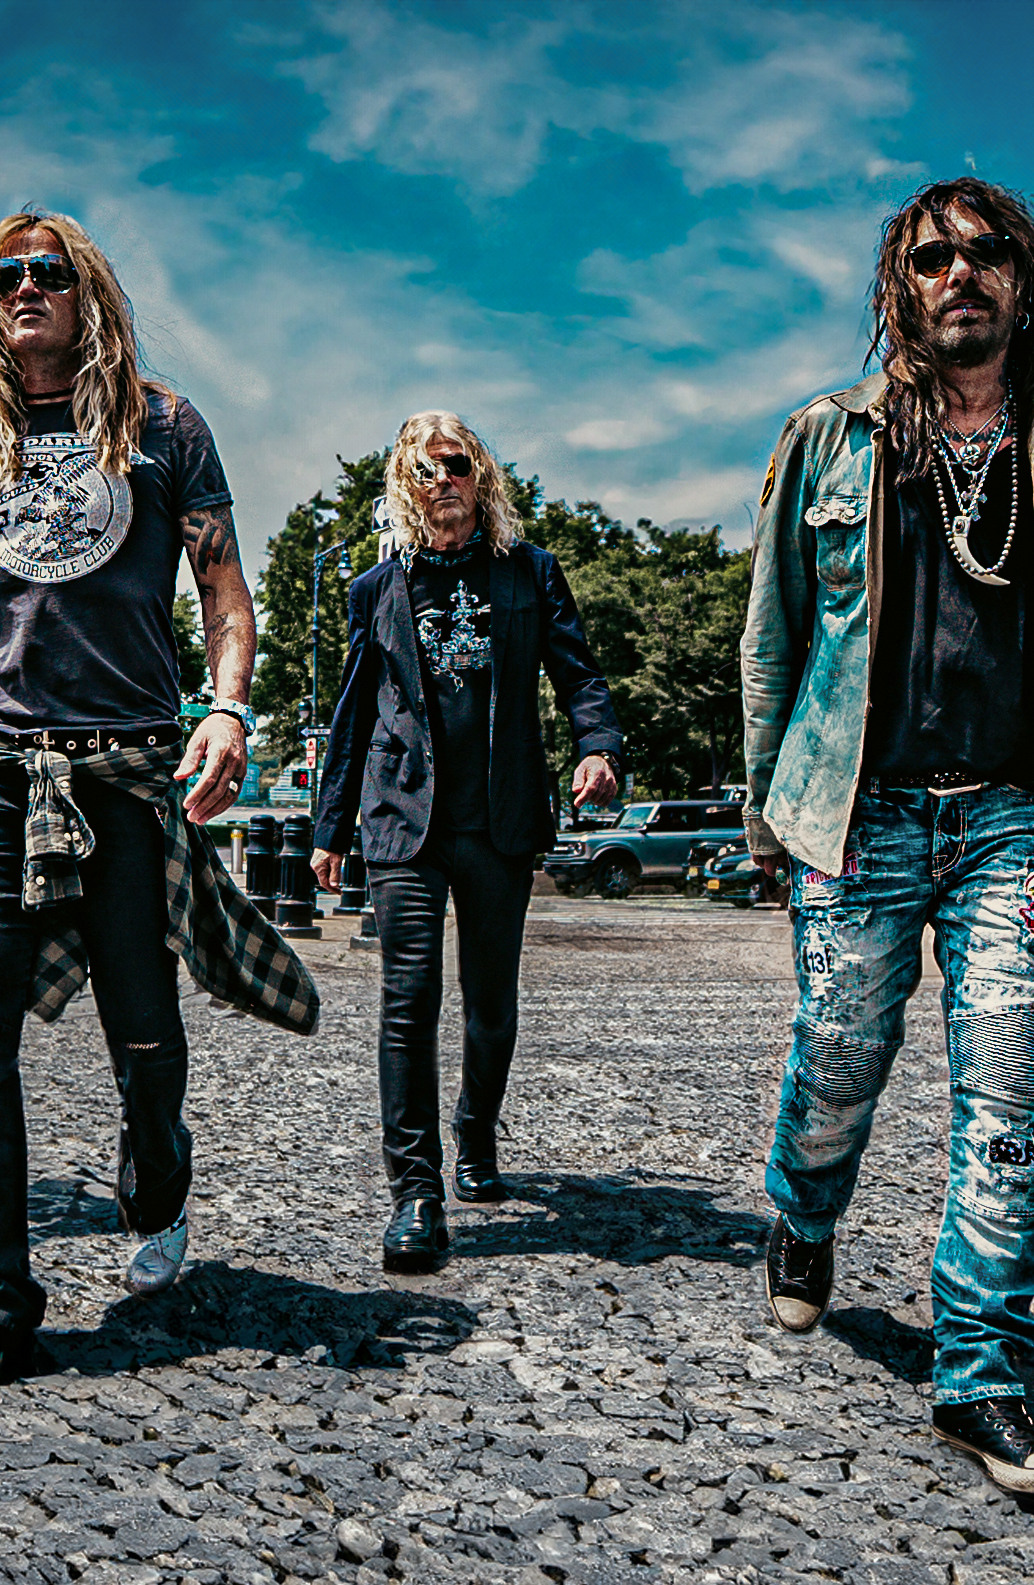 Ein Gruppe von fünf Personen, die wie eine Rockband gekleidet sind, geht auf einer Kopfsteinpflasterstraße mit einem bewölkten Himmel im Hintergrund.